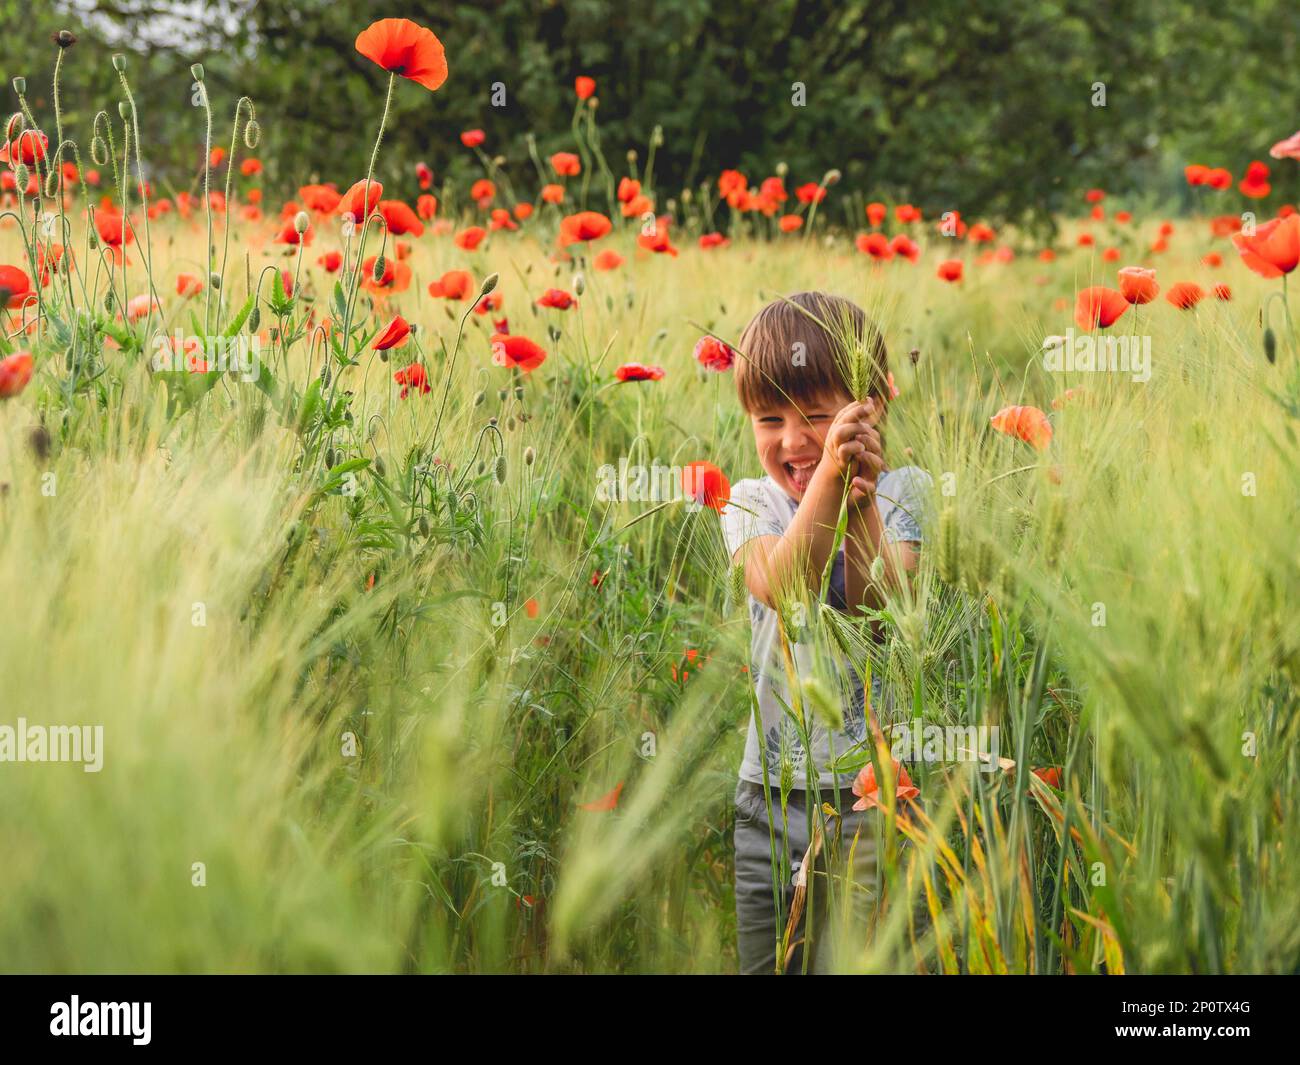 Der kleine Junge sieht Mohnblumen zum ersten Mal in seinem Leben. Roggenfeld mit roten Blumen bei Sonnenuntergang. Aufrichtige Emotionen des Kindes. Kind erforscht die Natur in der warmen Jahreszeit. Stockfoto